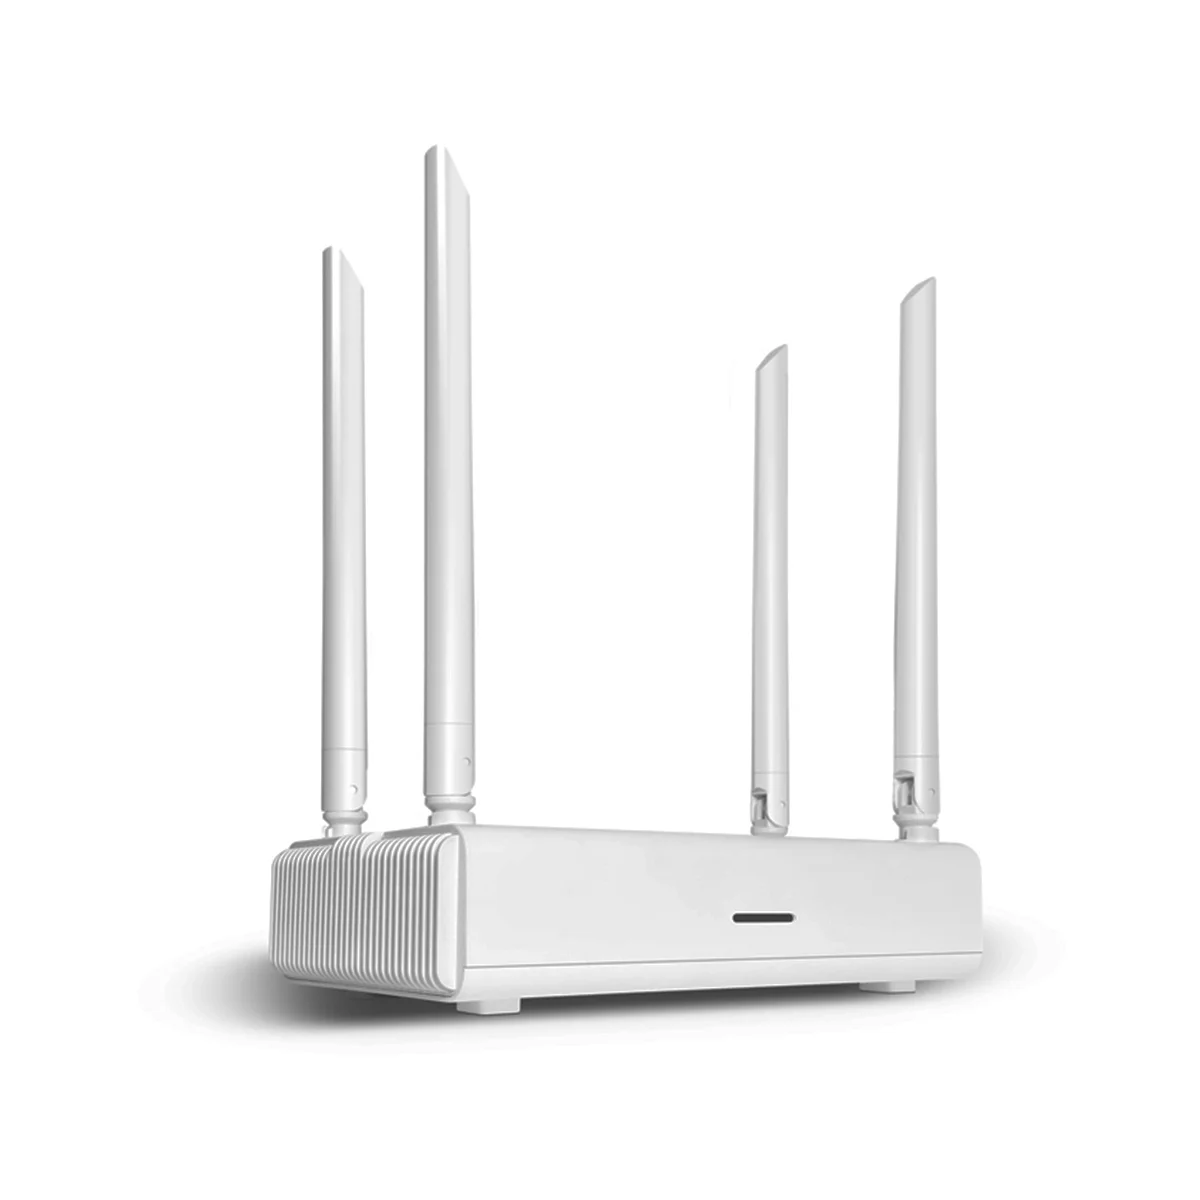 

Wi-Fi-роутер 1200M 2,4G + 5,8G 802.11AC 4x Мбит/с маршрутизация + мостовой режим поддержка 64 пользователей 4 антенны CPE US